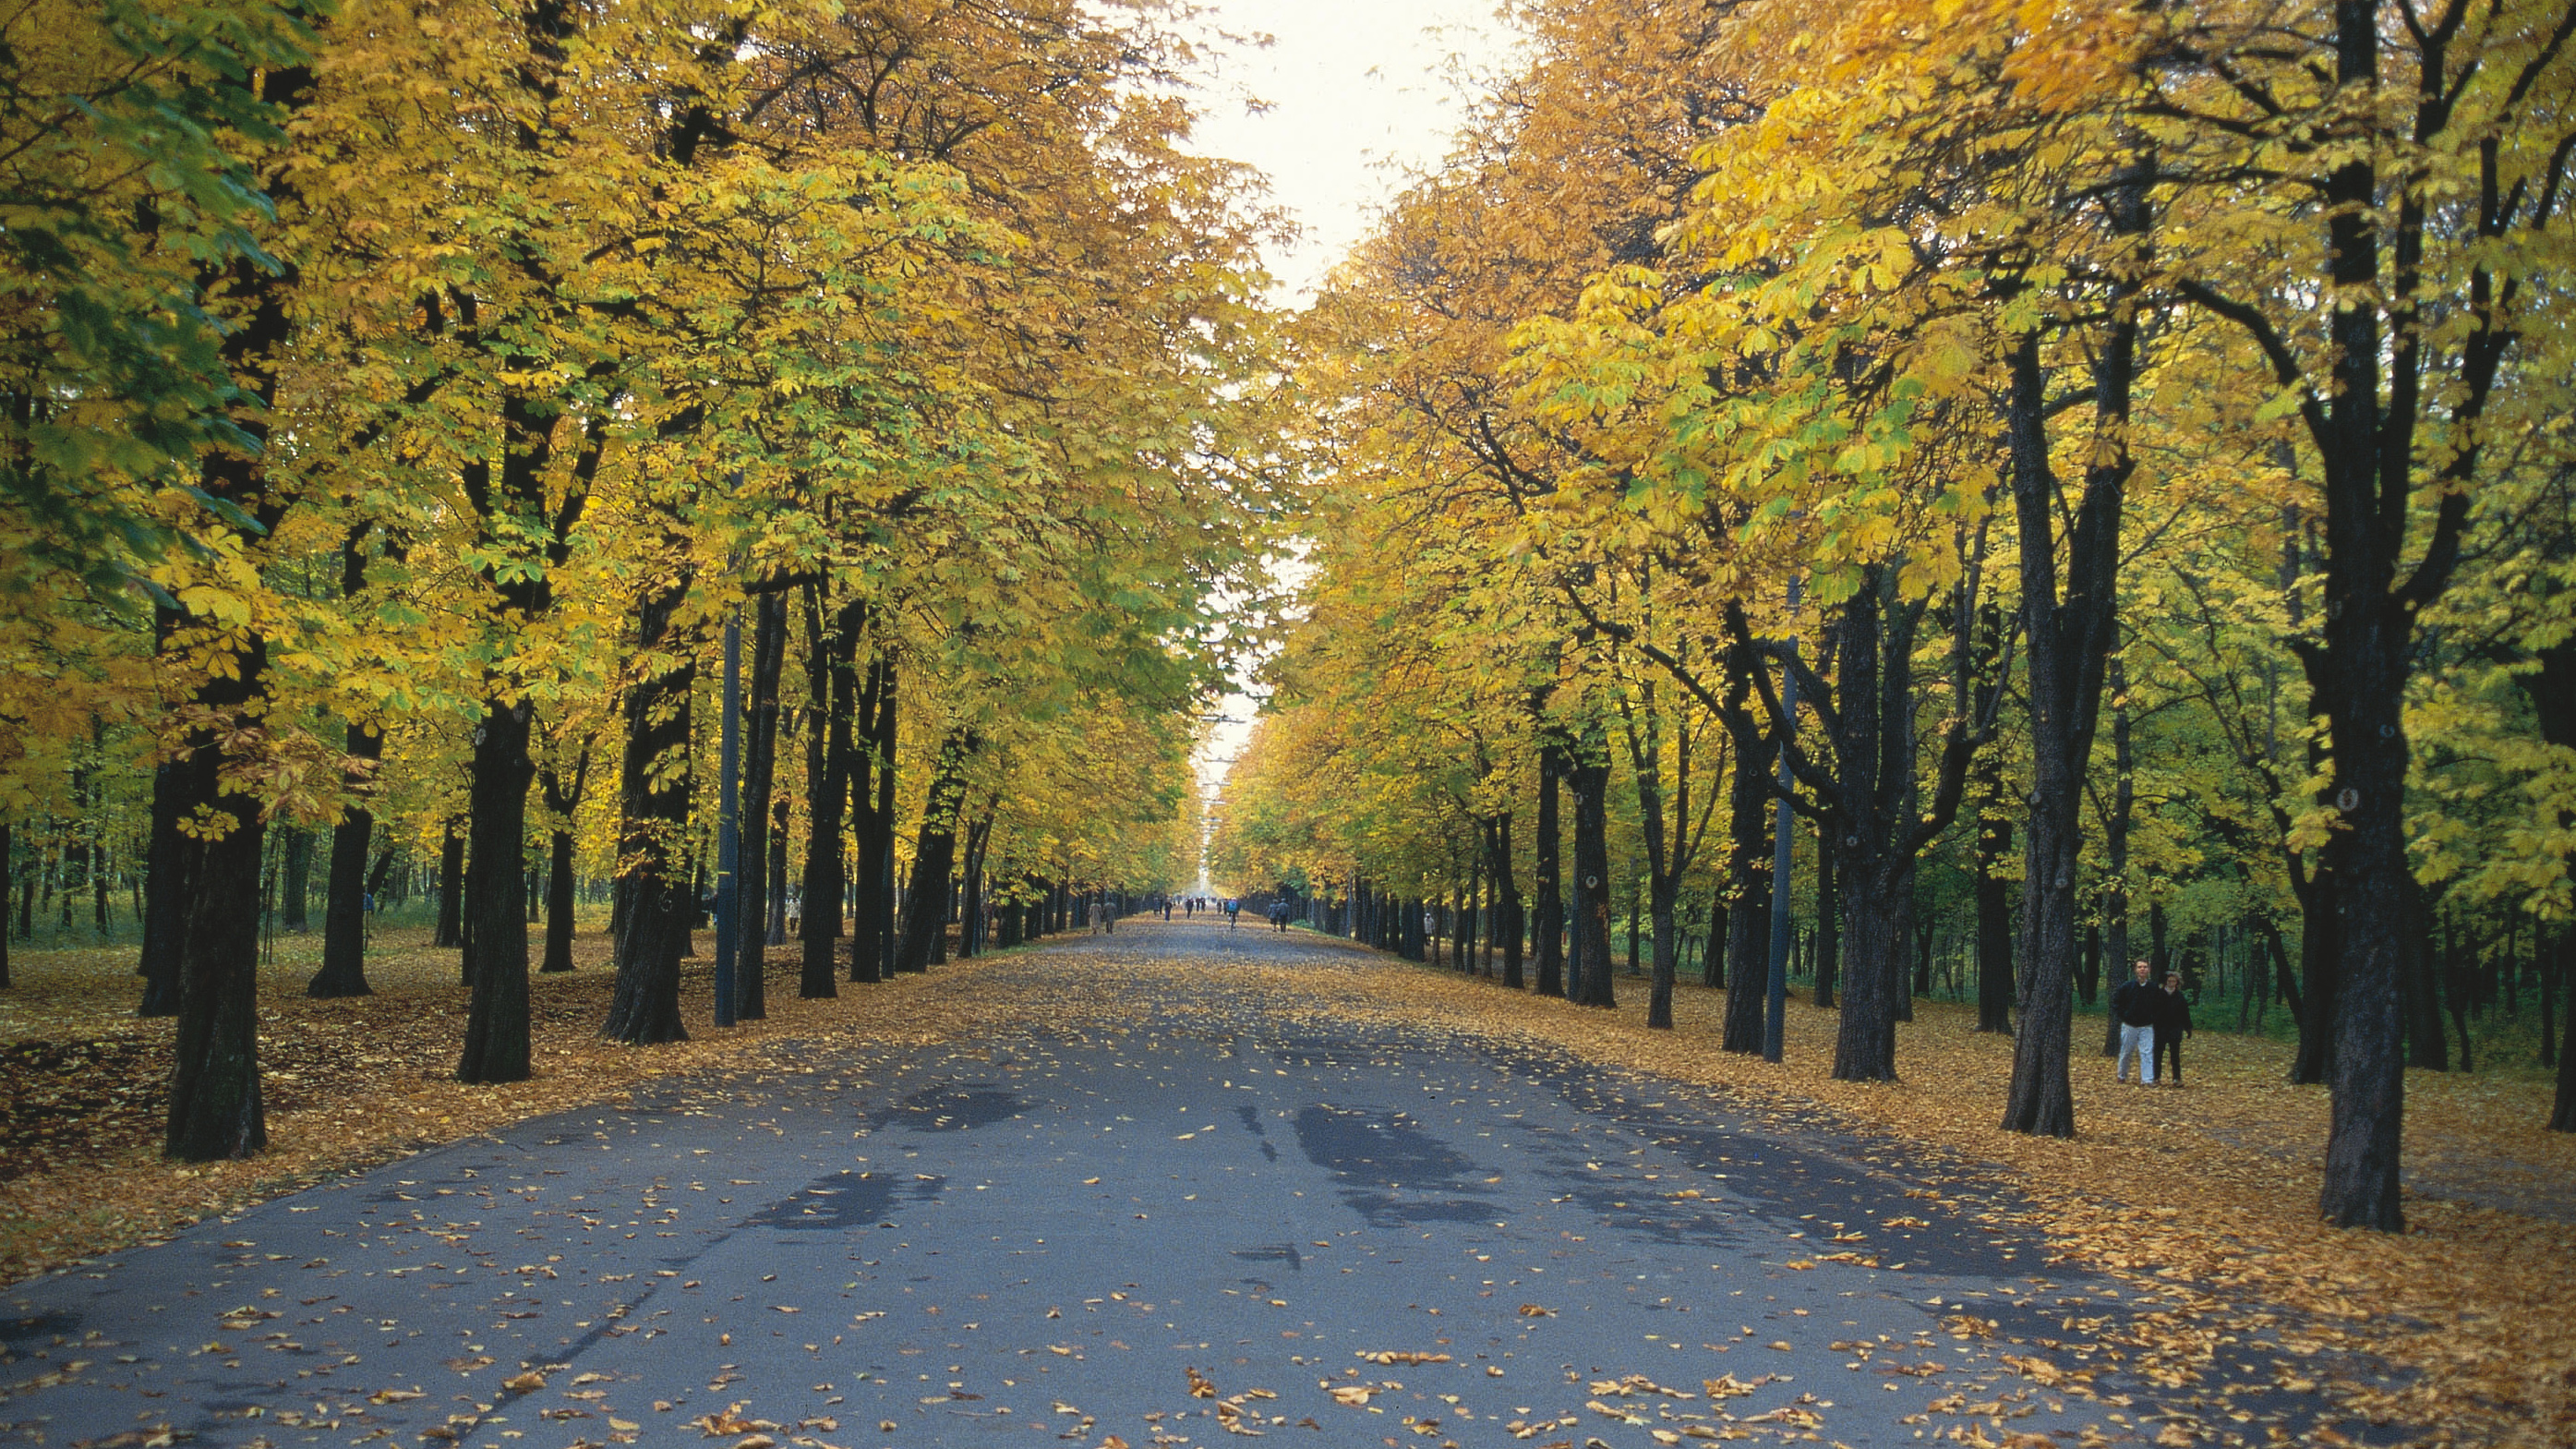 Bild von Prater Hauptallee im Herbst: die Blätter sind schon gelb verfärbt und fallen ab.